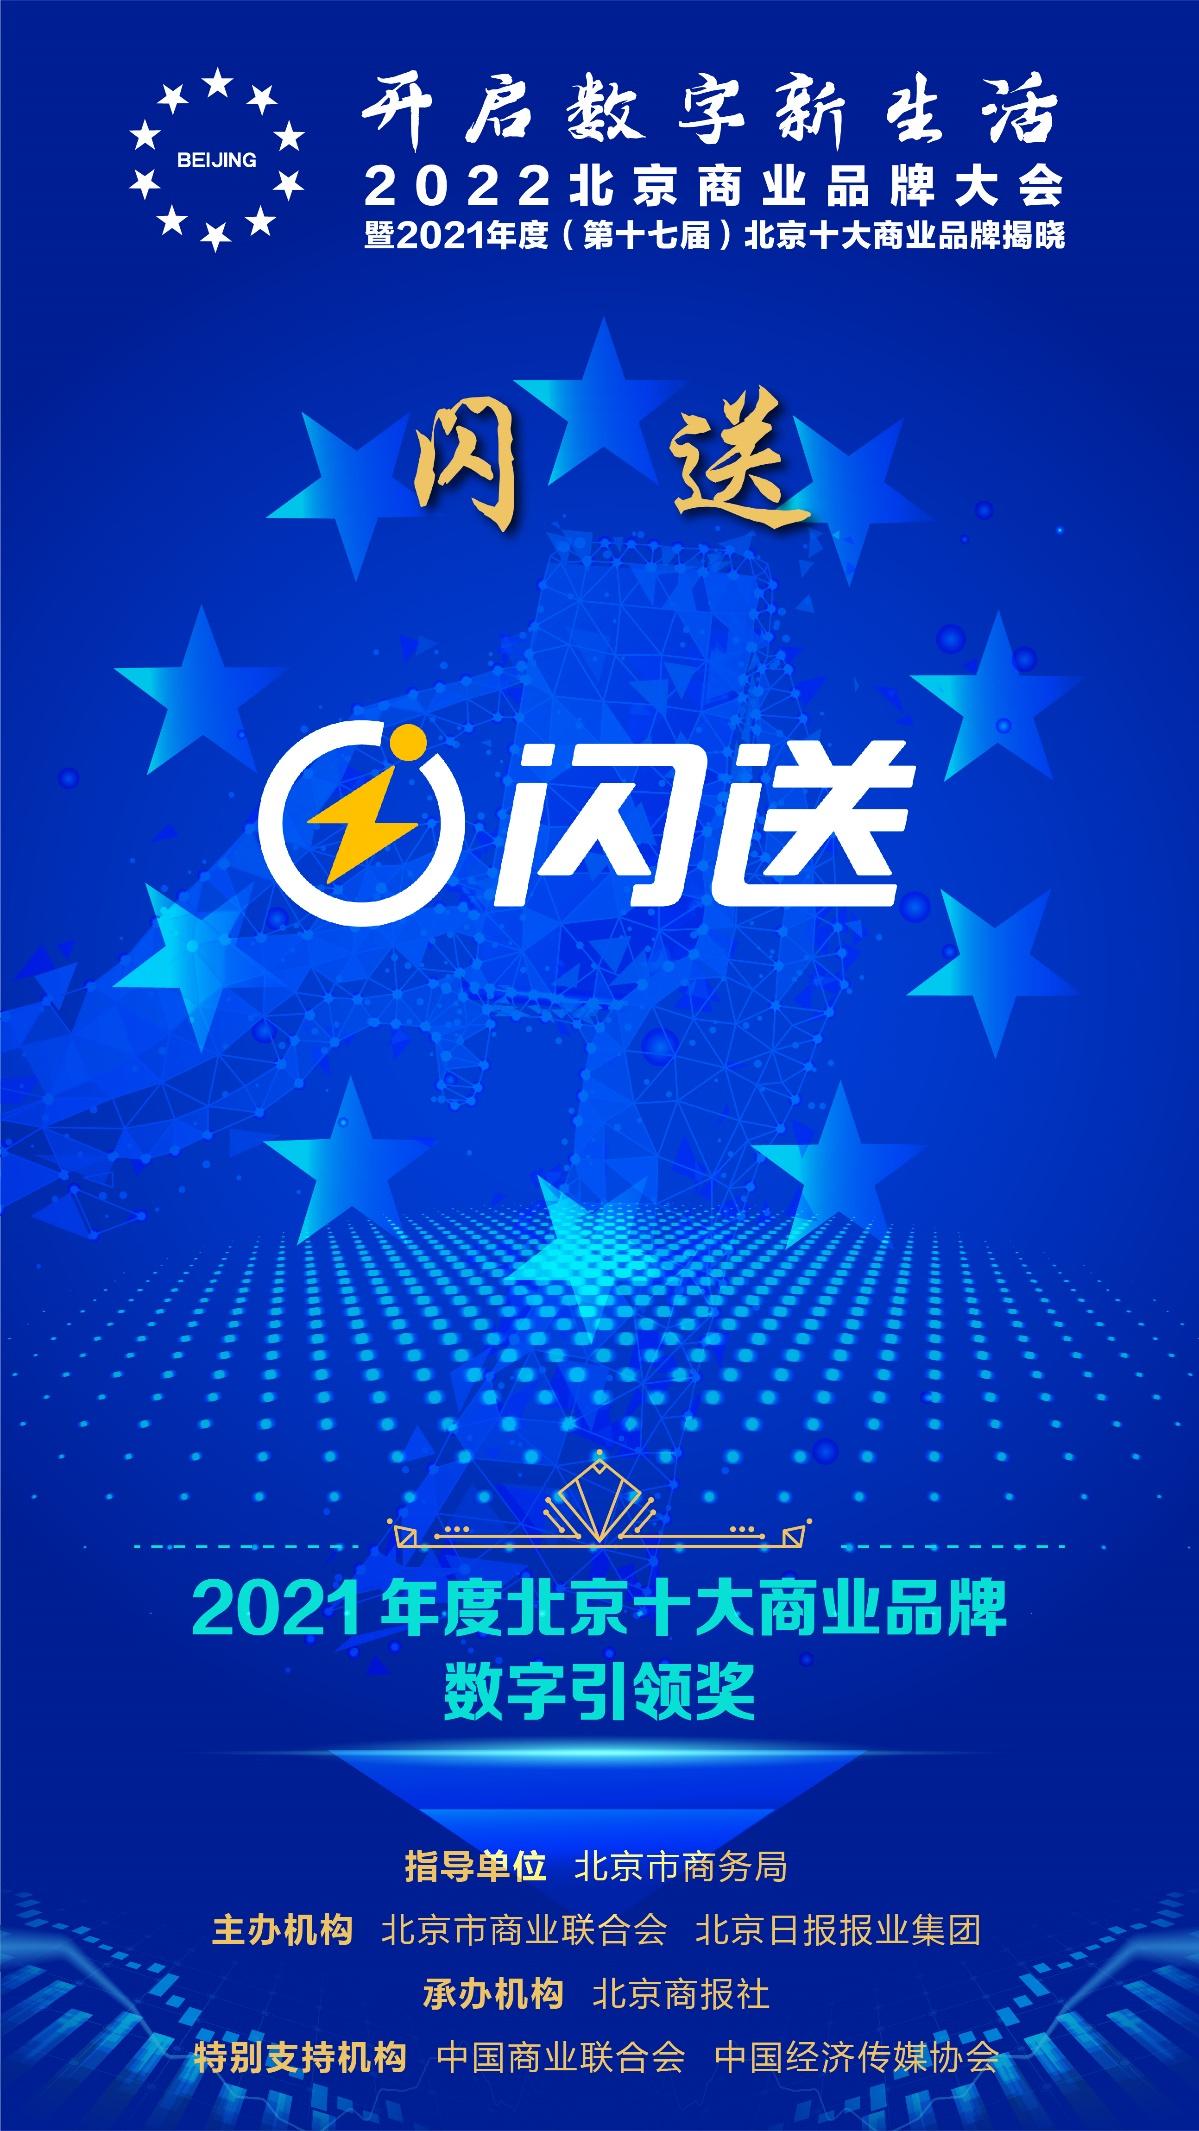 闪送入选“2021年度北京十大商业品牌数字引领奖” 数字化实力推动物流行业转型